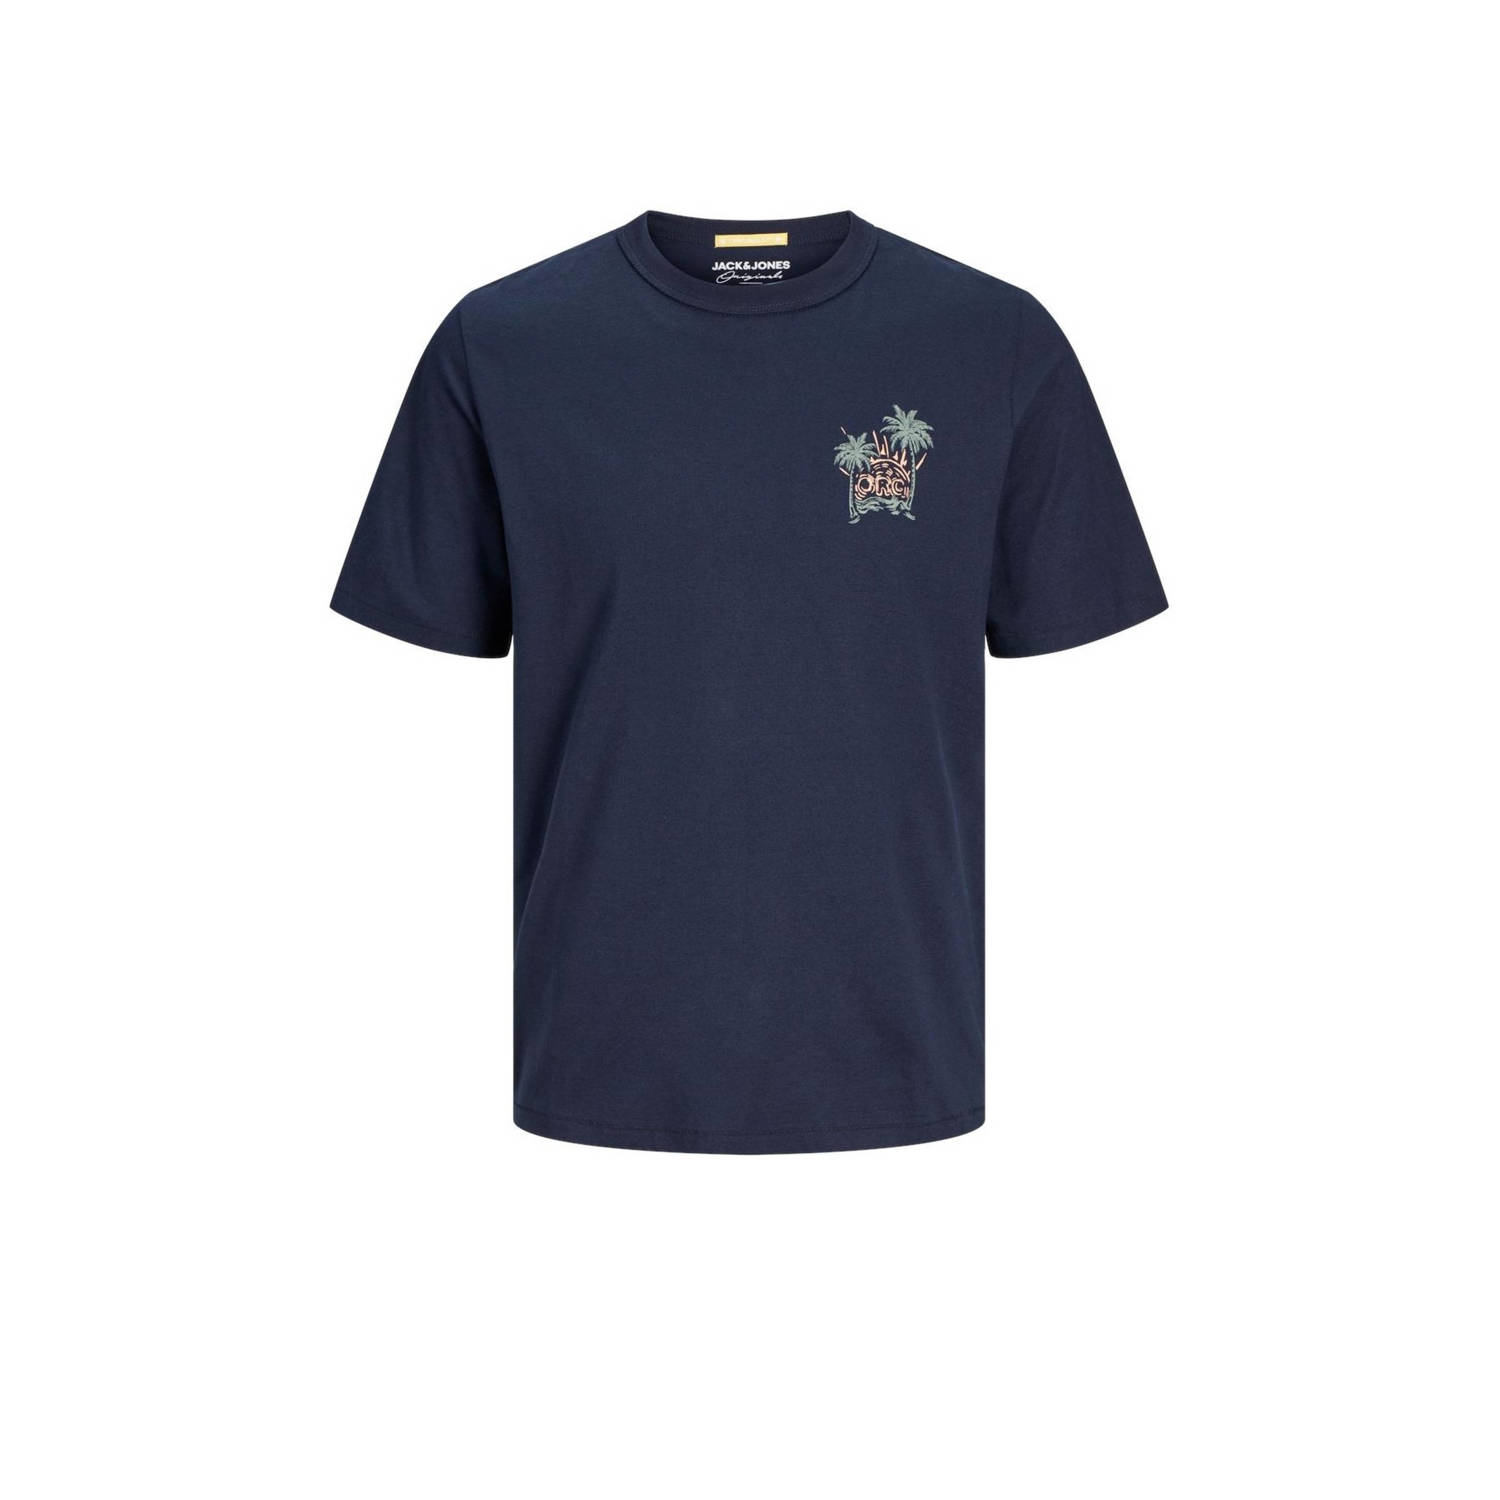 Jack & jones JUNIOR T-shirt JORPALM met backprint donkerblauw Jongens Katoen Ronde hals 128